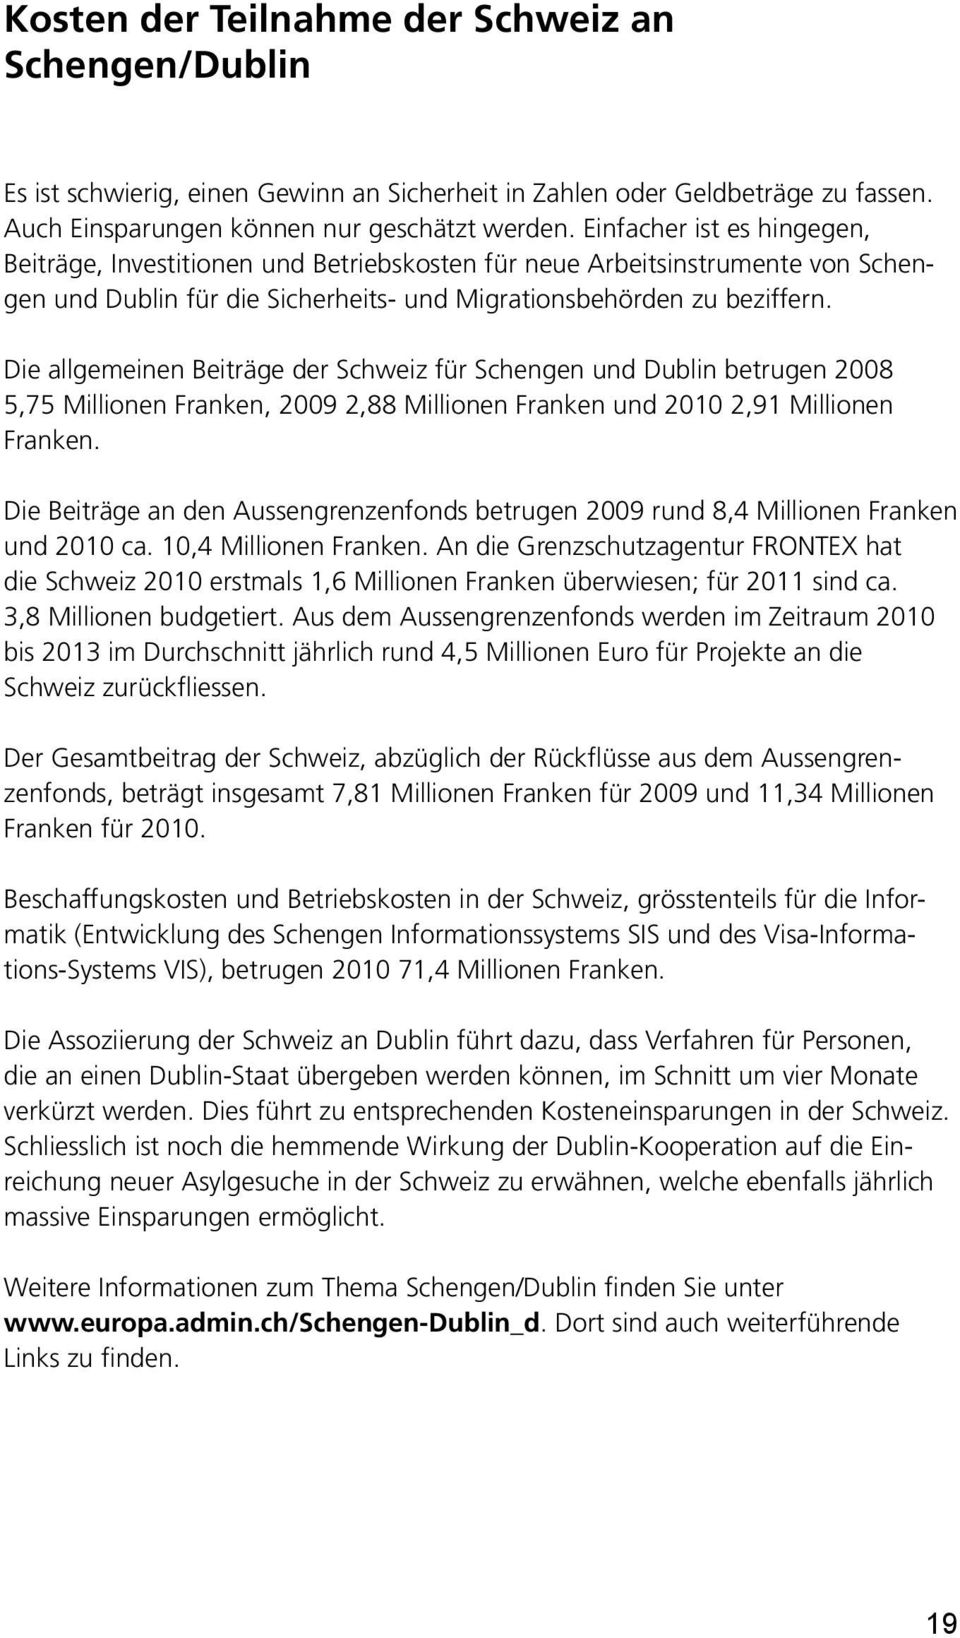 Die allgemeinen Beiträge der Schweiz für Schengen und Dublin betrugen 2008 5,75 Millionen Franken, 2009 2,88 Millionen Franken und 2010 2,91 Millionen Franken.